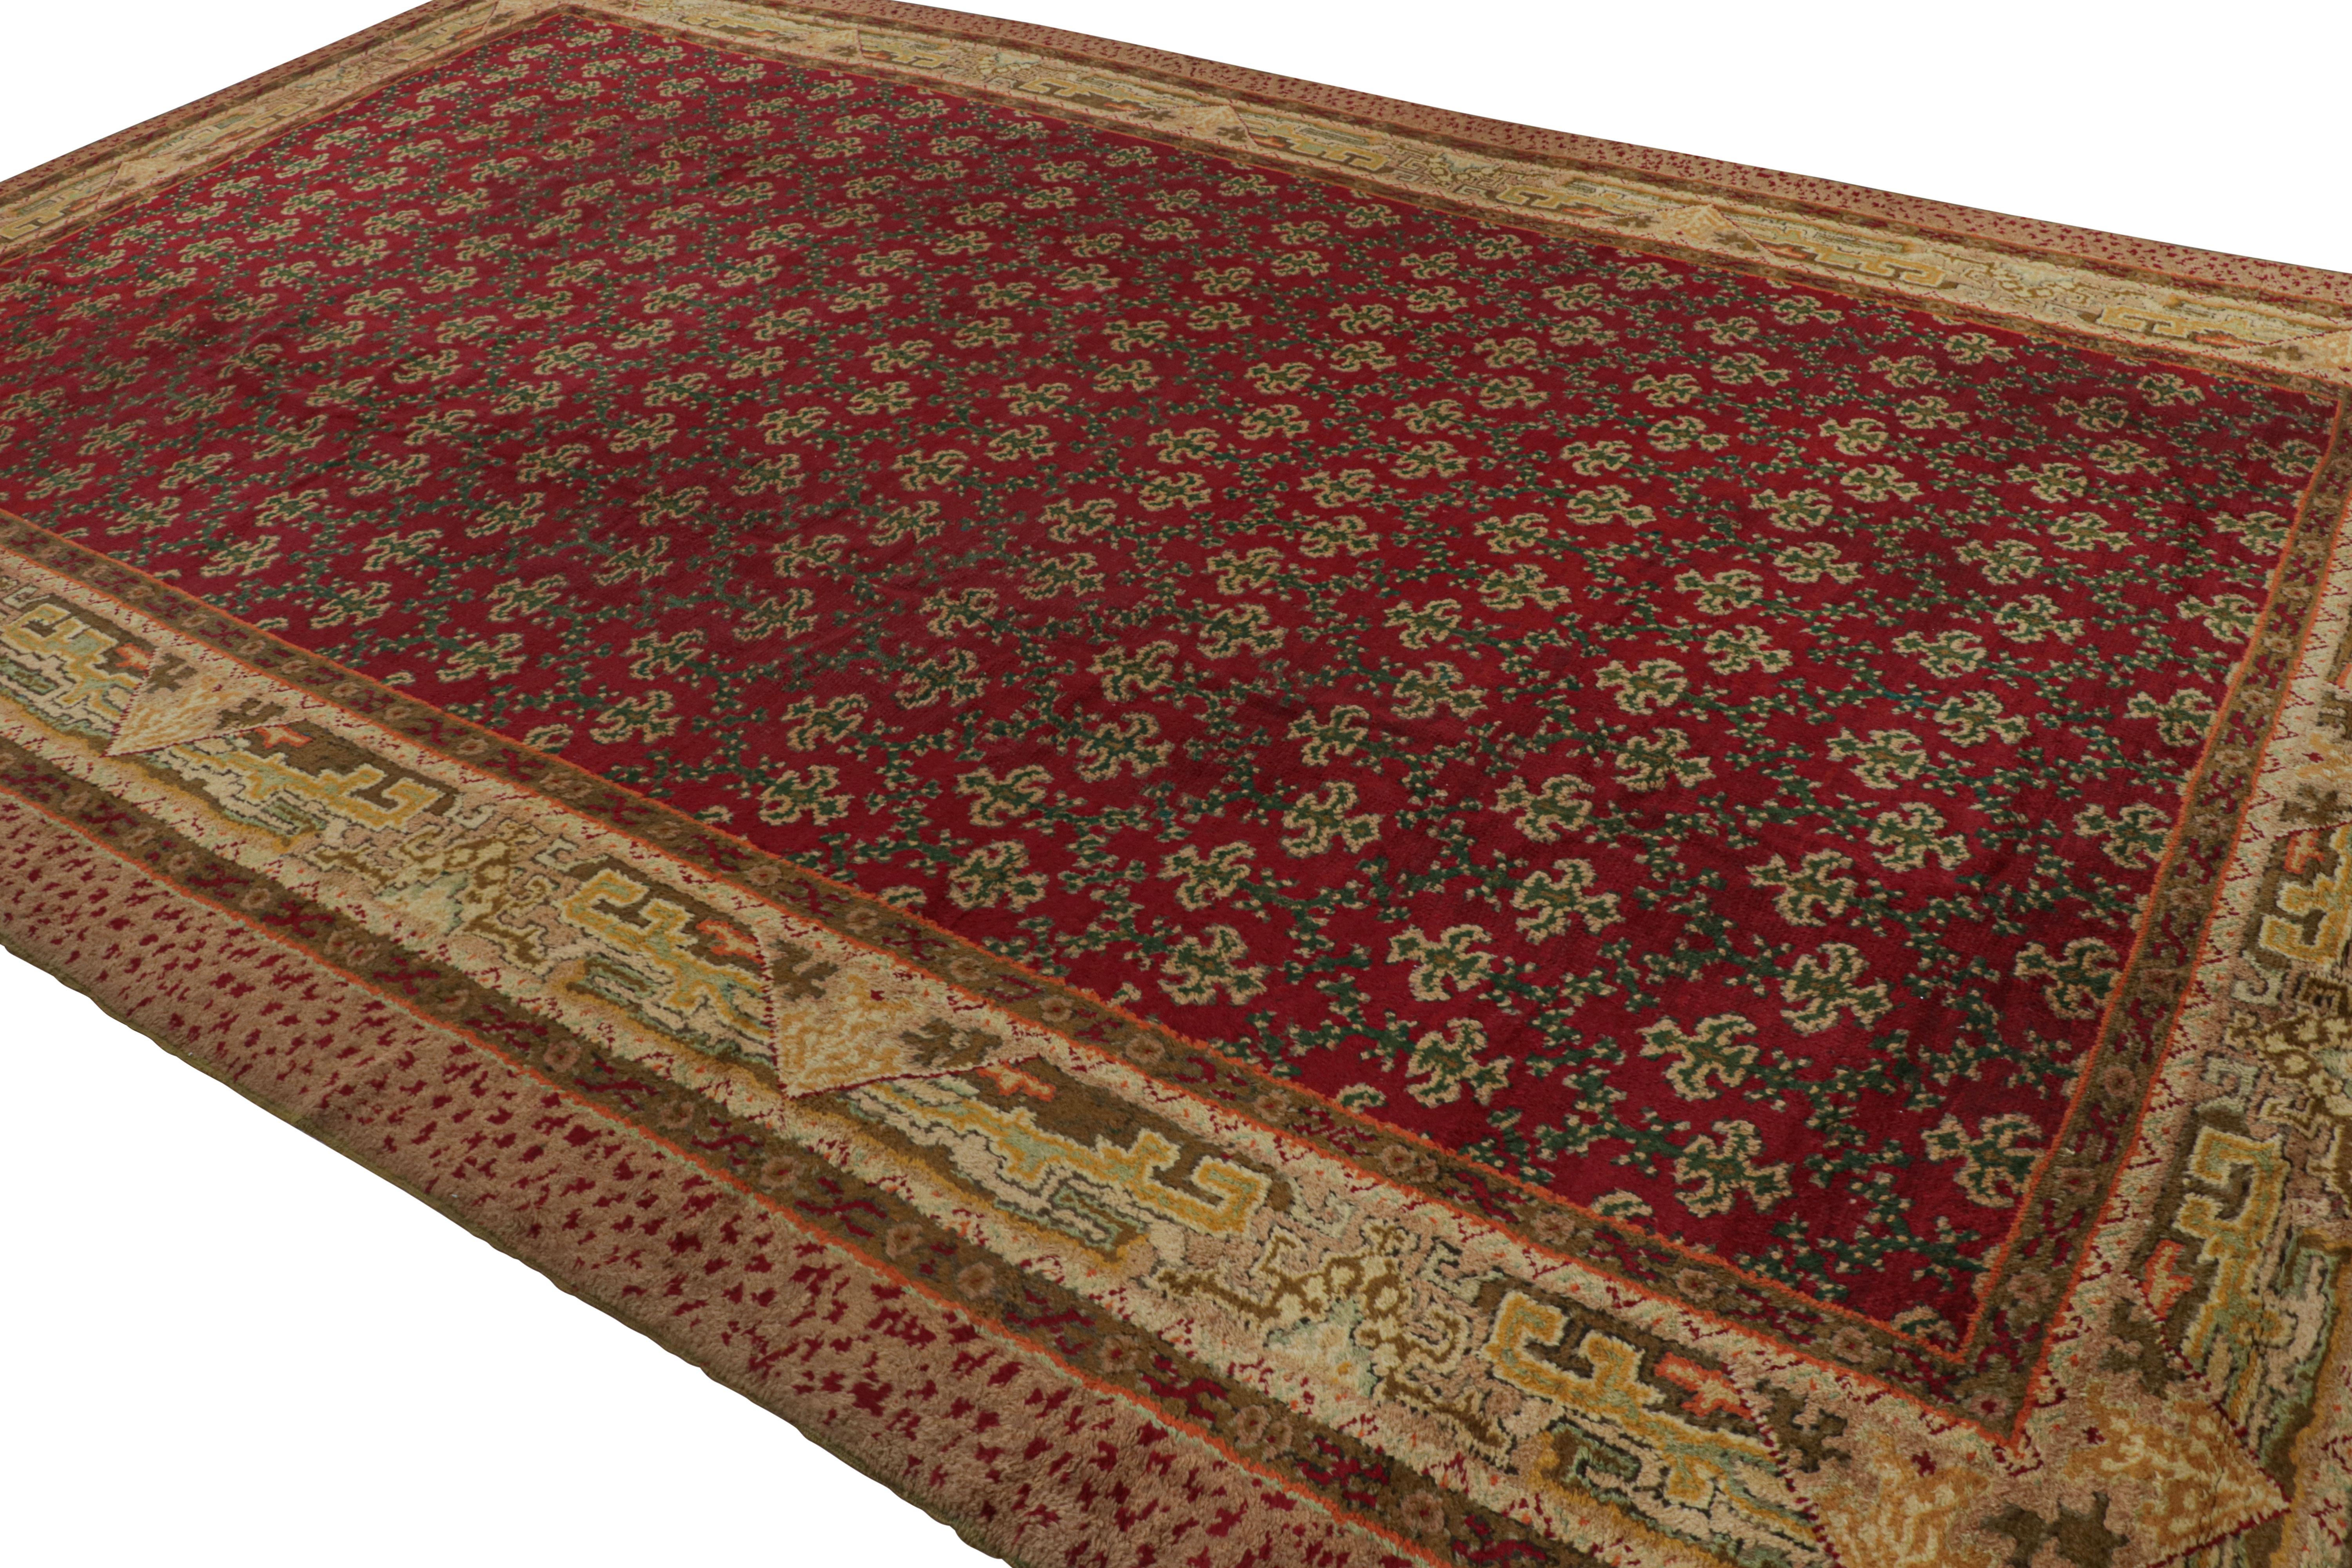 Handgeknüpft in Wolle, eine antike 11x17 Antike Axminster Teppich circa 1920-1930 neuesten zu unserer antiken Sammlung.

Über das Design:


Hier unterstreicht sattes Rot die grünen Blumenmuster im Feld, während Chartreuse- und Goldtöne 